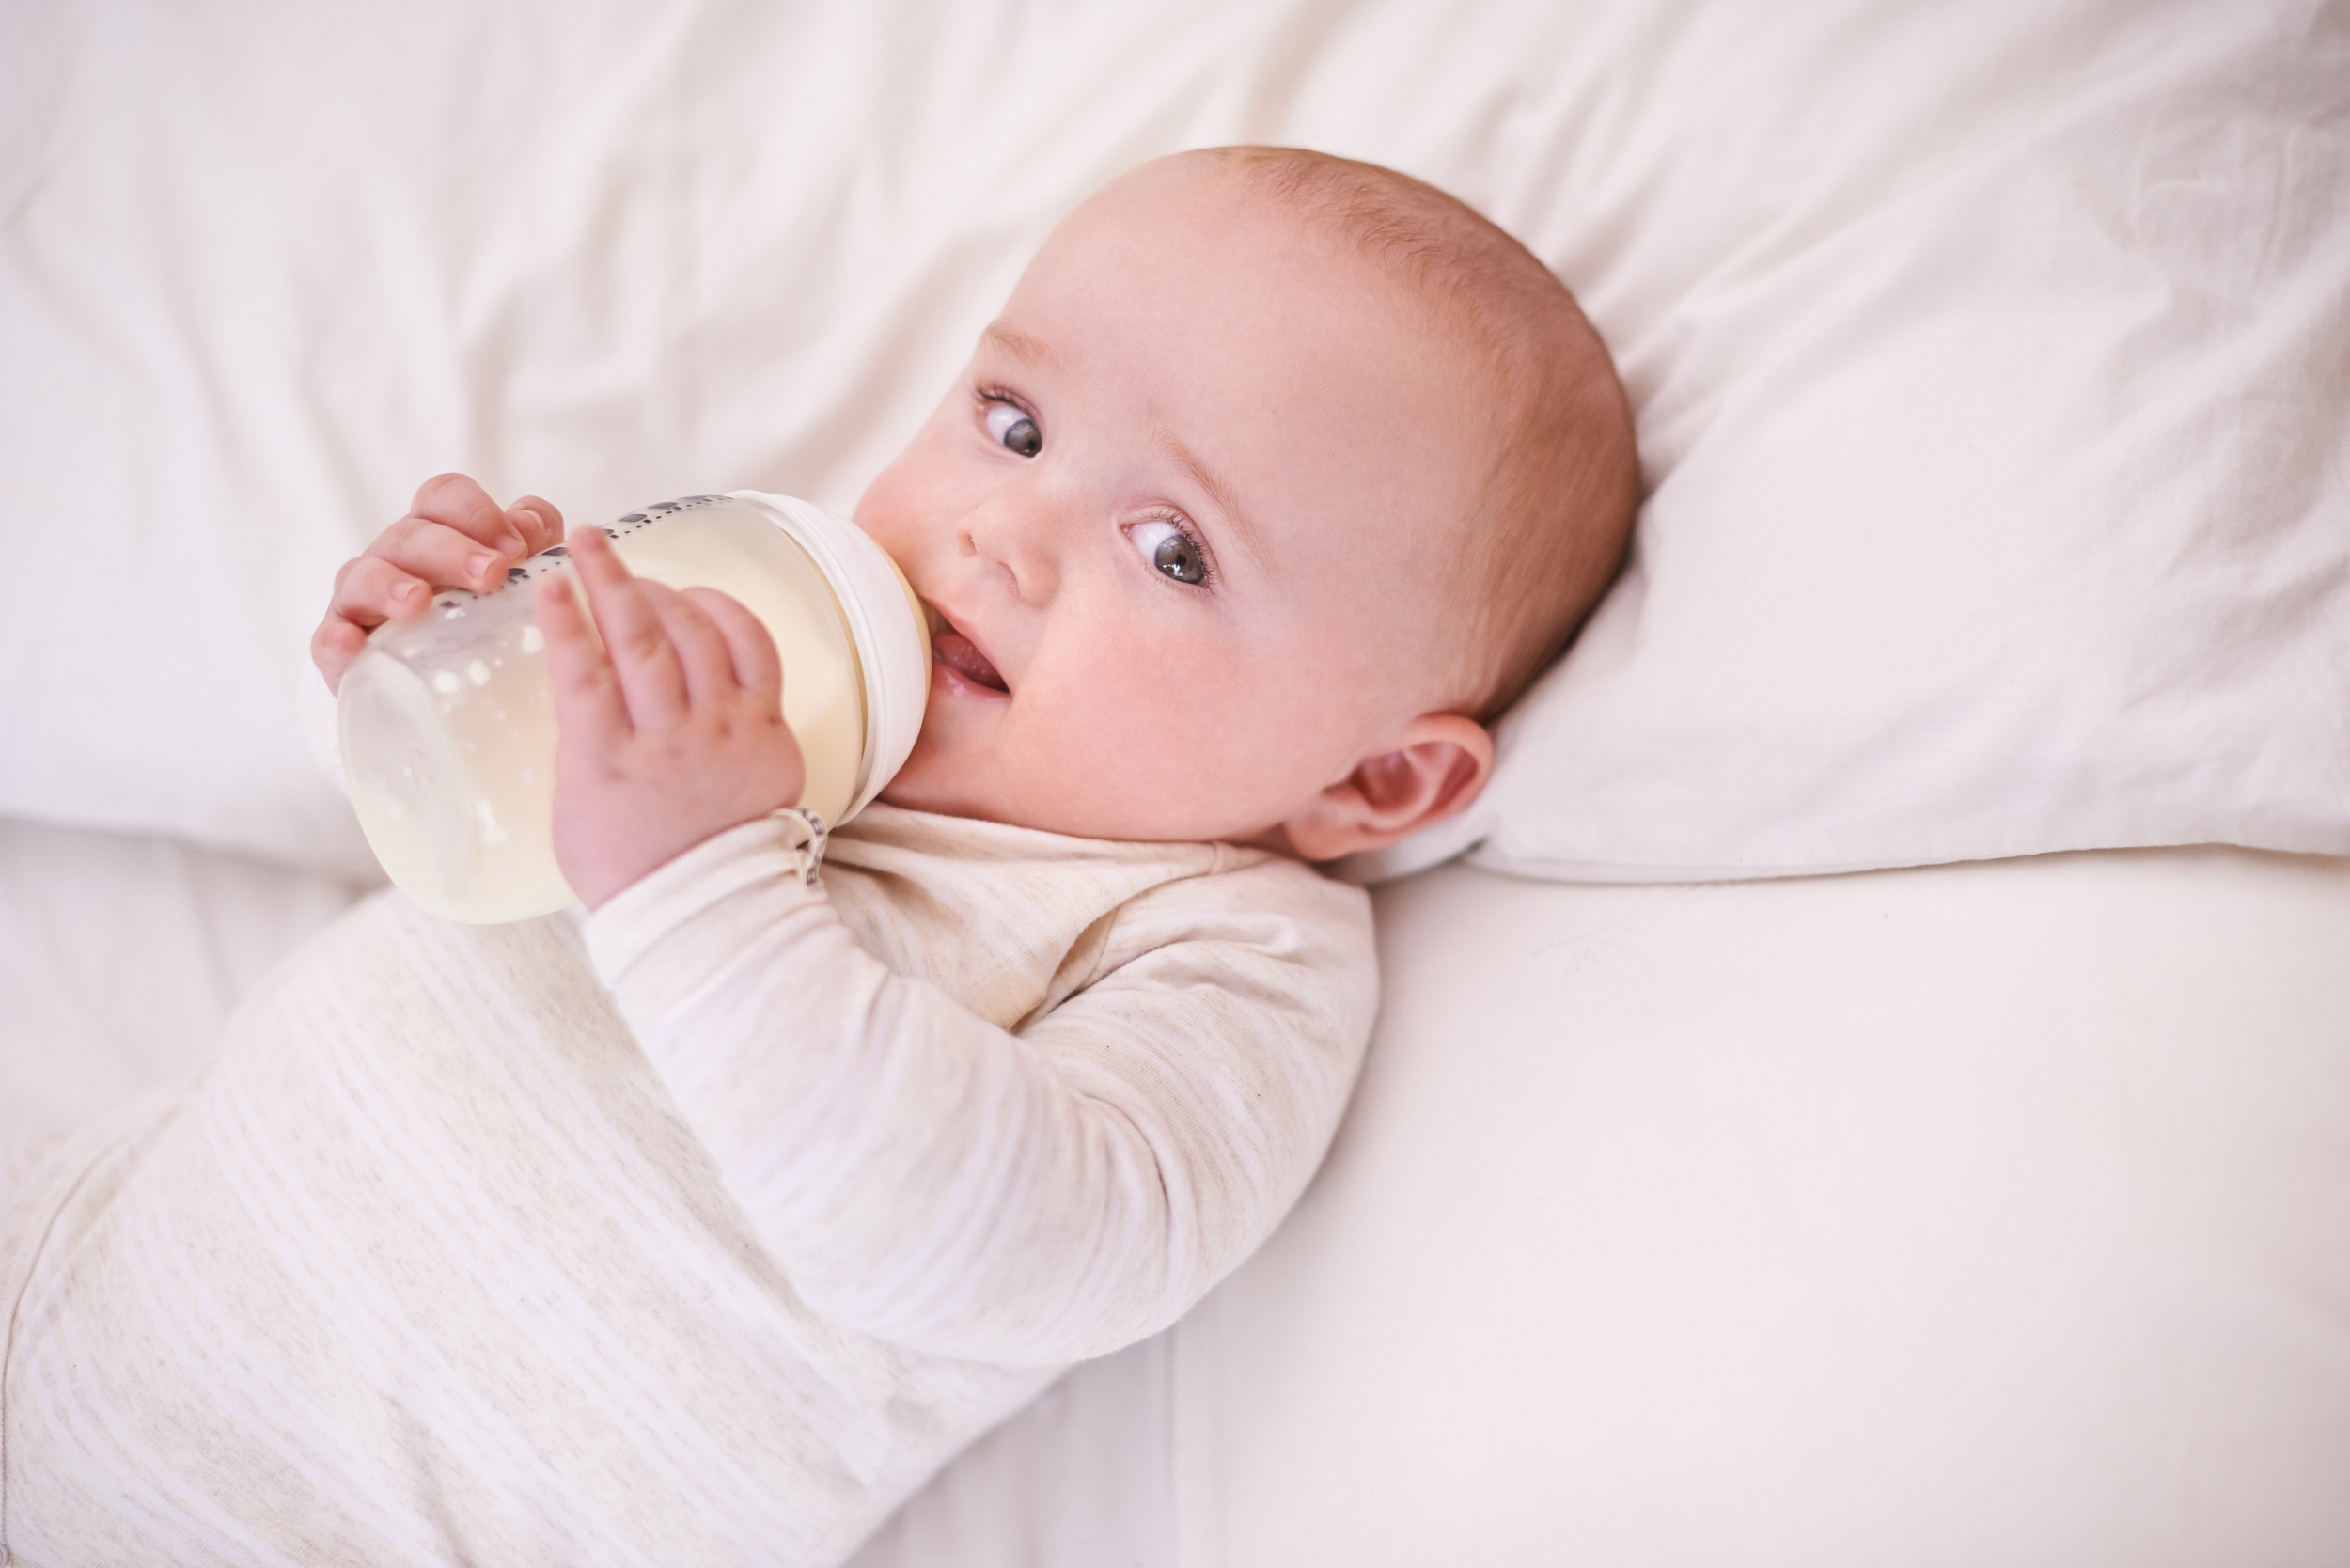 Hướng dẫn mẹ cách sử dụng bình sữa cho trẻ sơ sinh an toàn